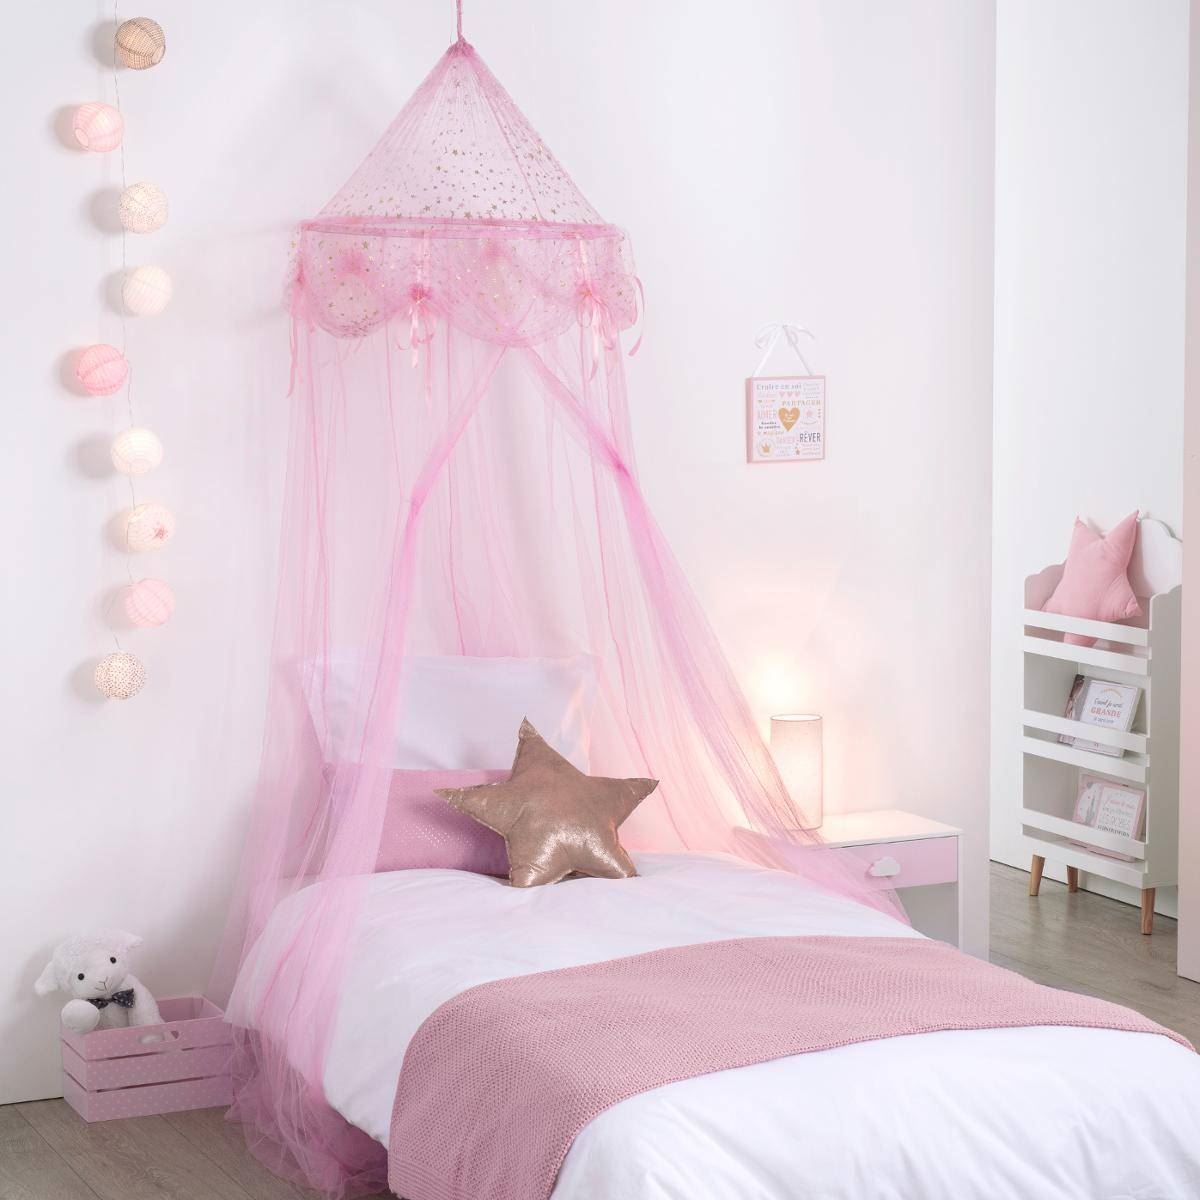 Kindersprei-Mademoiselle-250x60cm-roze-